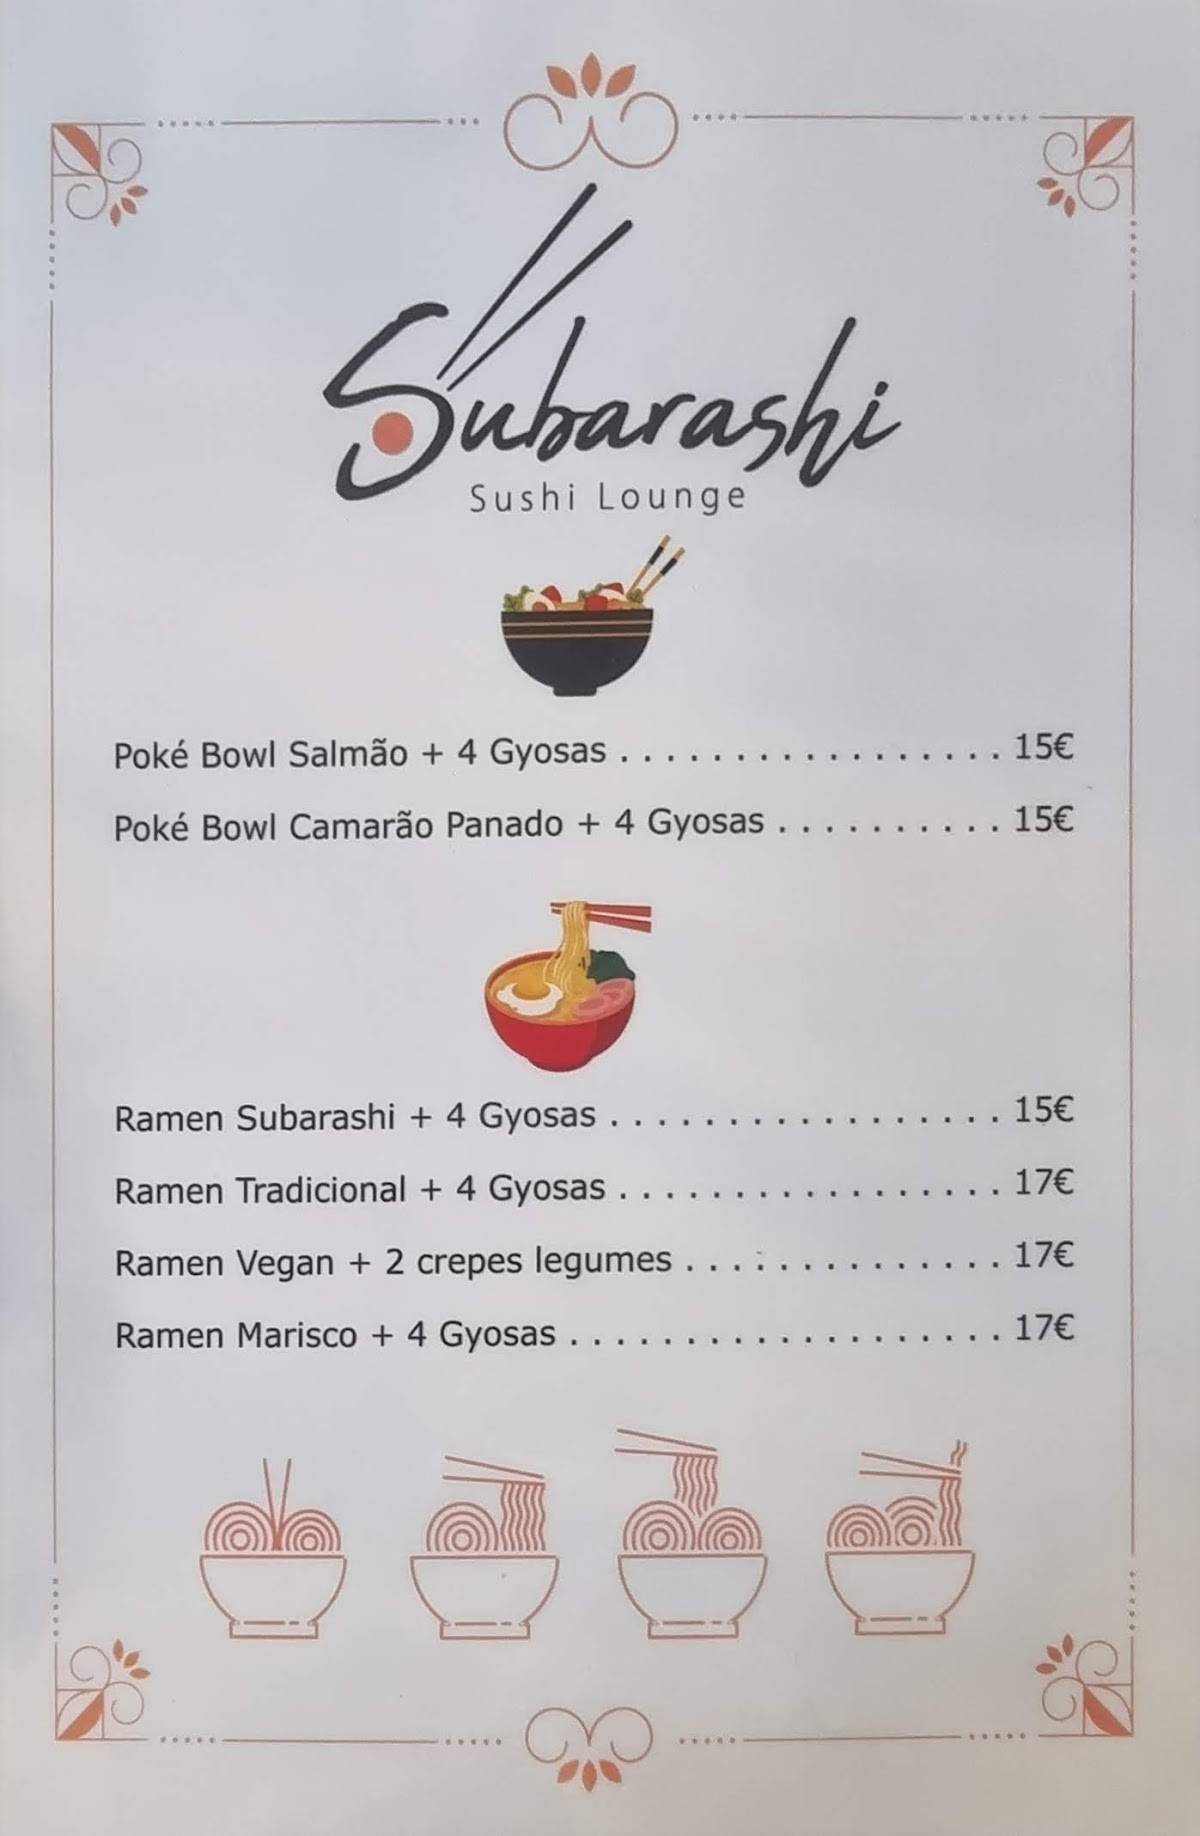 SUBARASHI SUSHI LOUNGE, Viana do Castelo - Comentários de Restaurantes,  Fotos & Número de Telefone